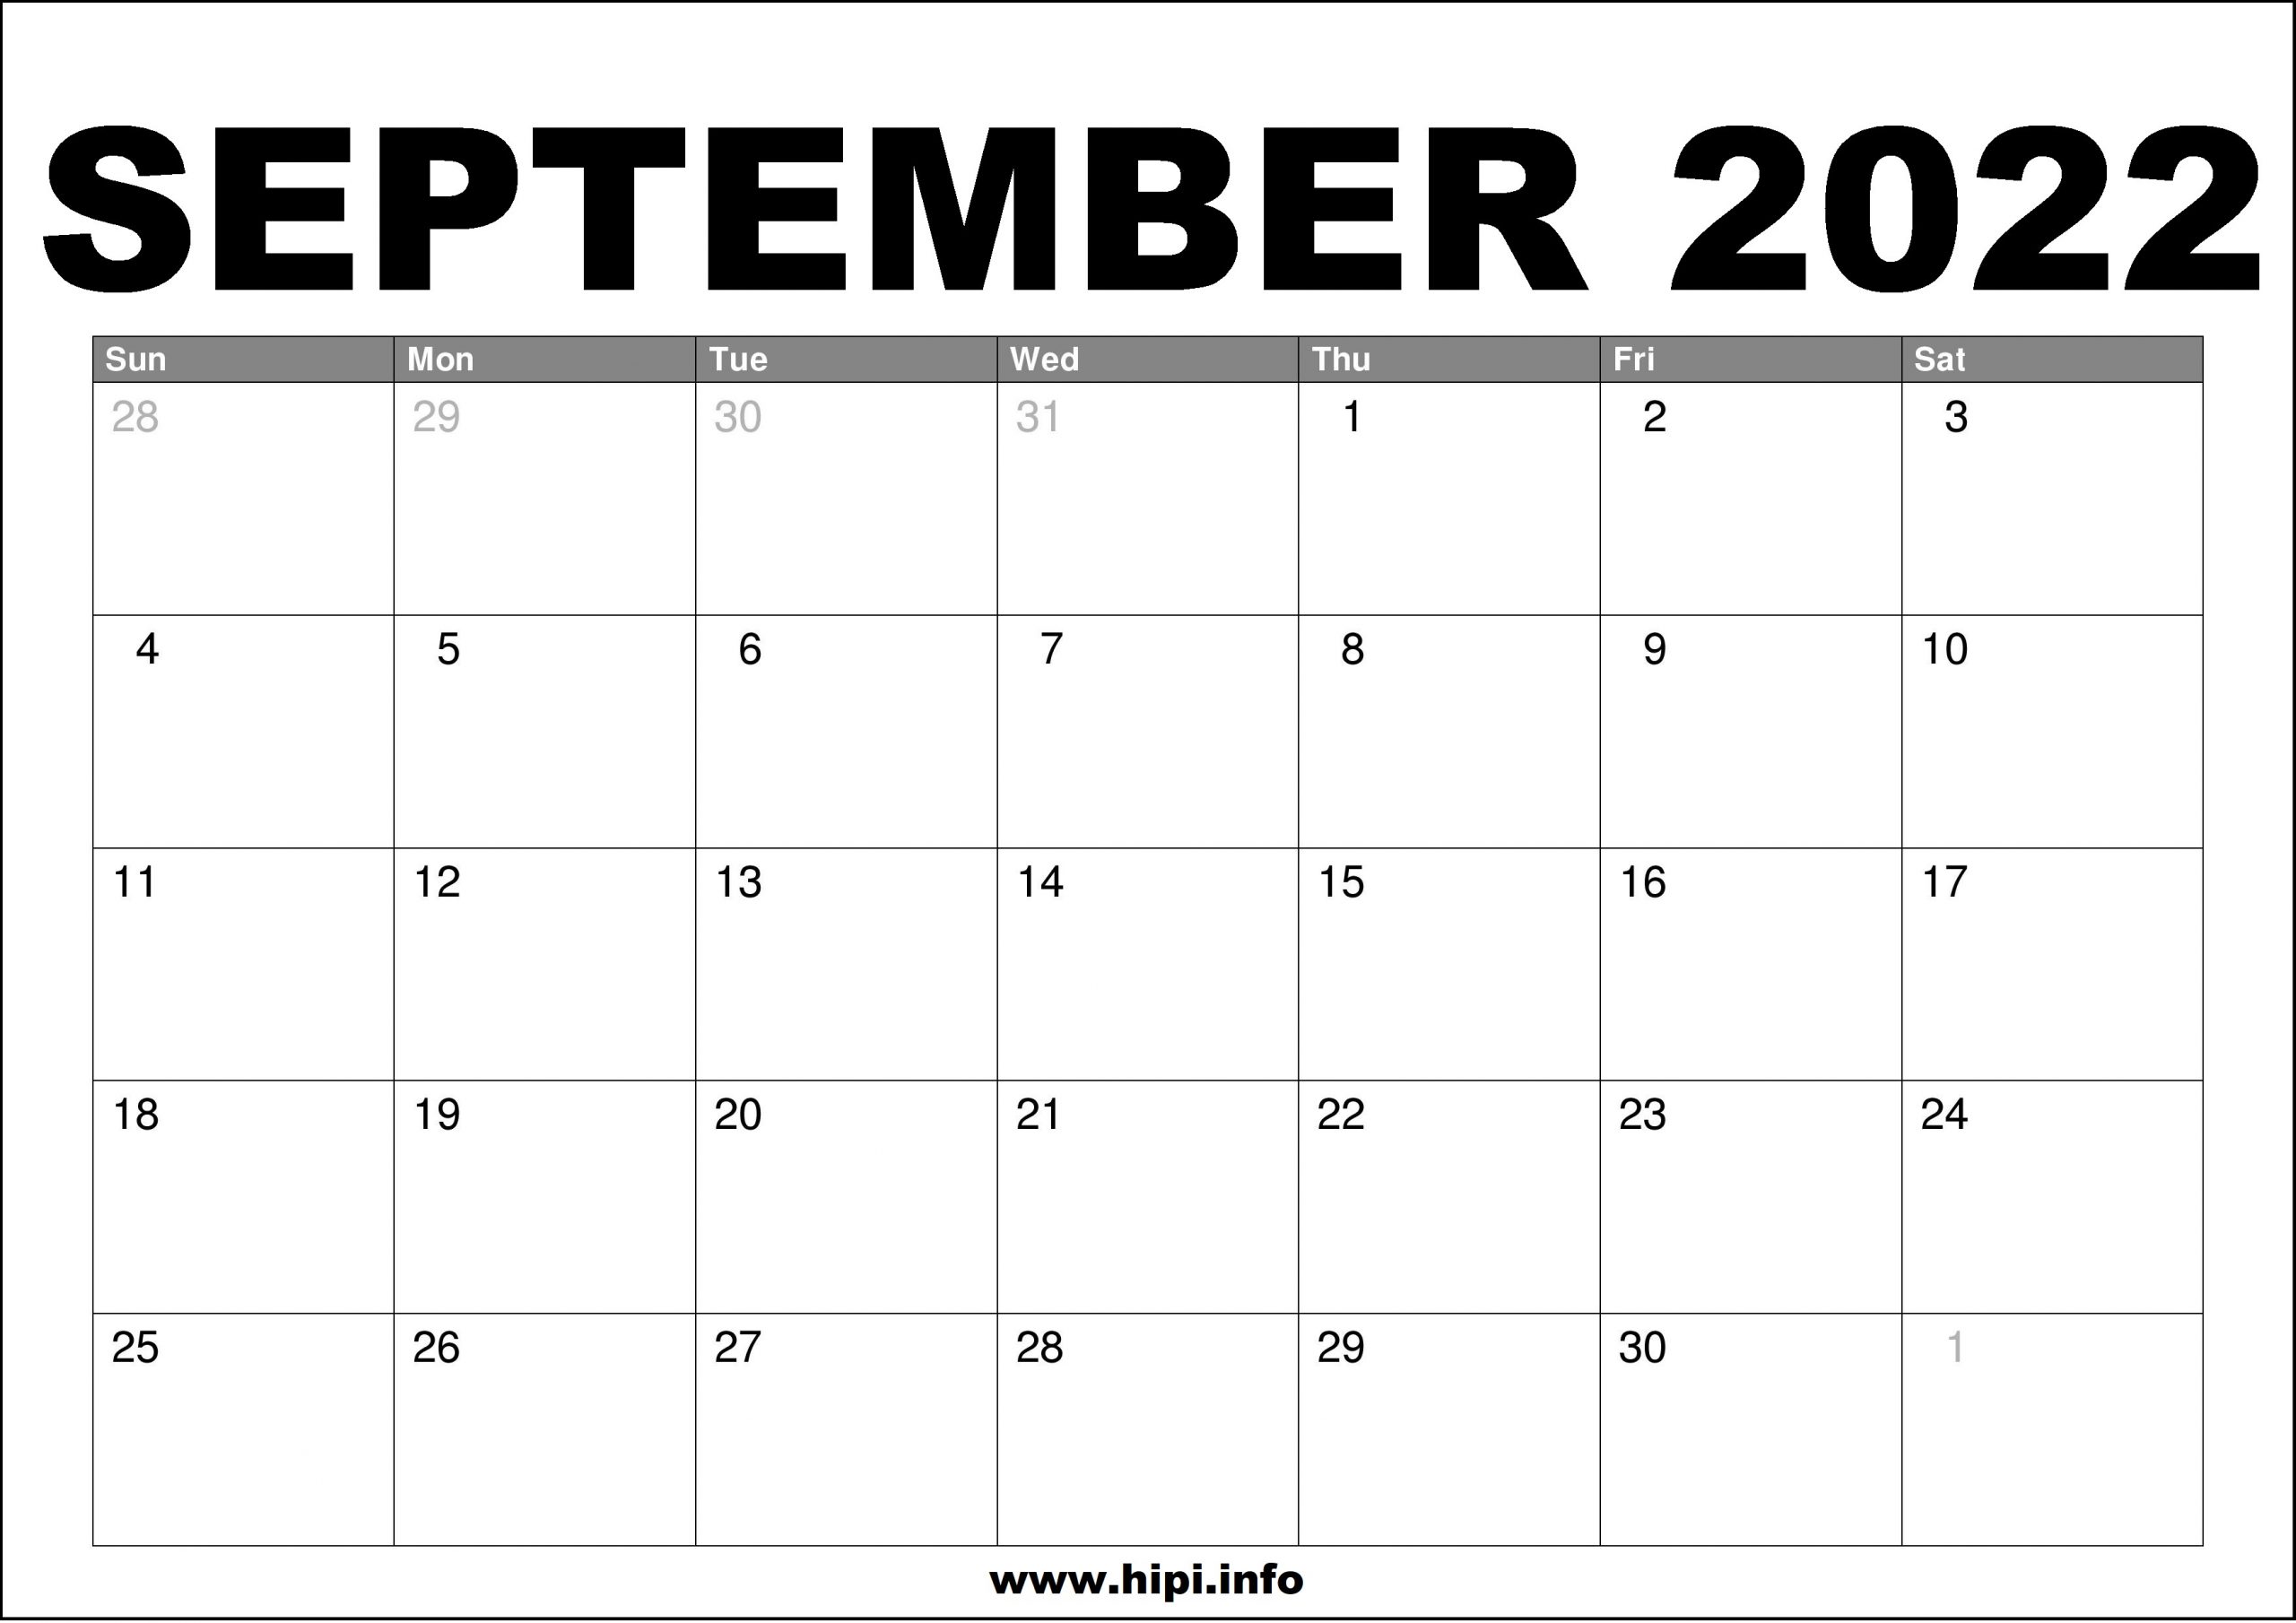 Free September 2022 Calendar September 2022 Calendar Printable Free - Hipi.info | Calendars Printable  Free